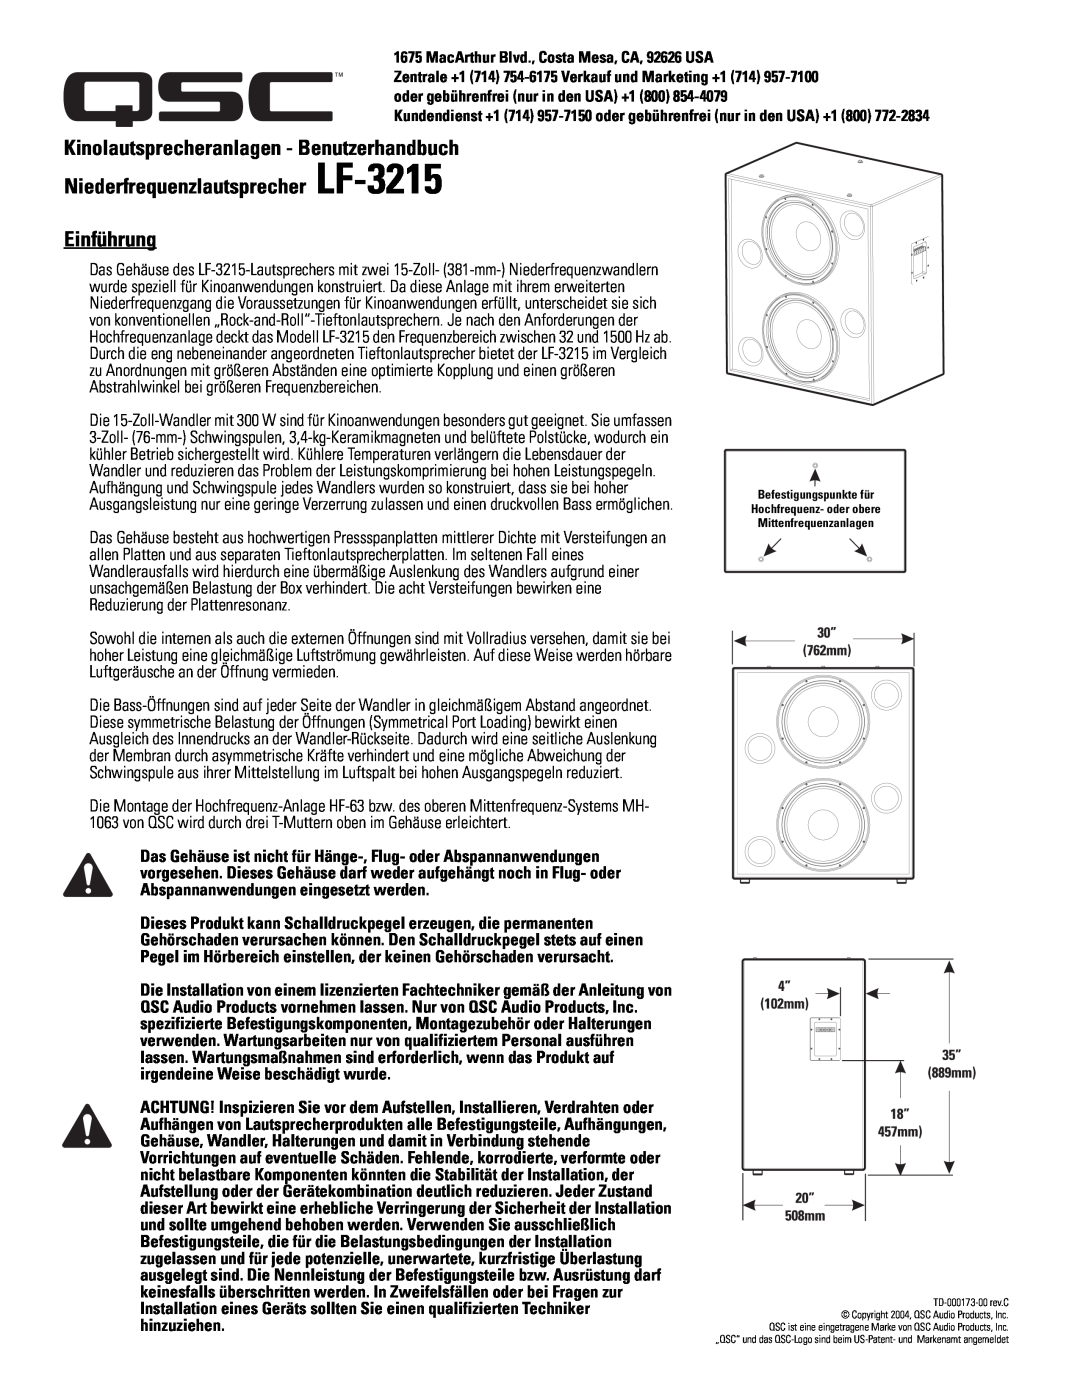 QSC Audio SC-322X specifications Kinolautsprecheranlagen - Benutzerhandbuch, Niederfrequenzlautsprecher LF-3215 Einführung 